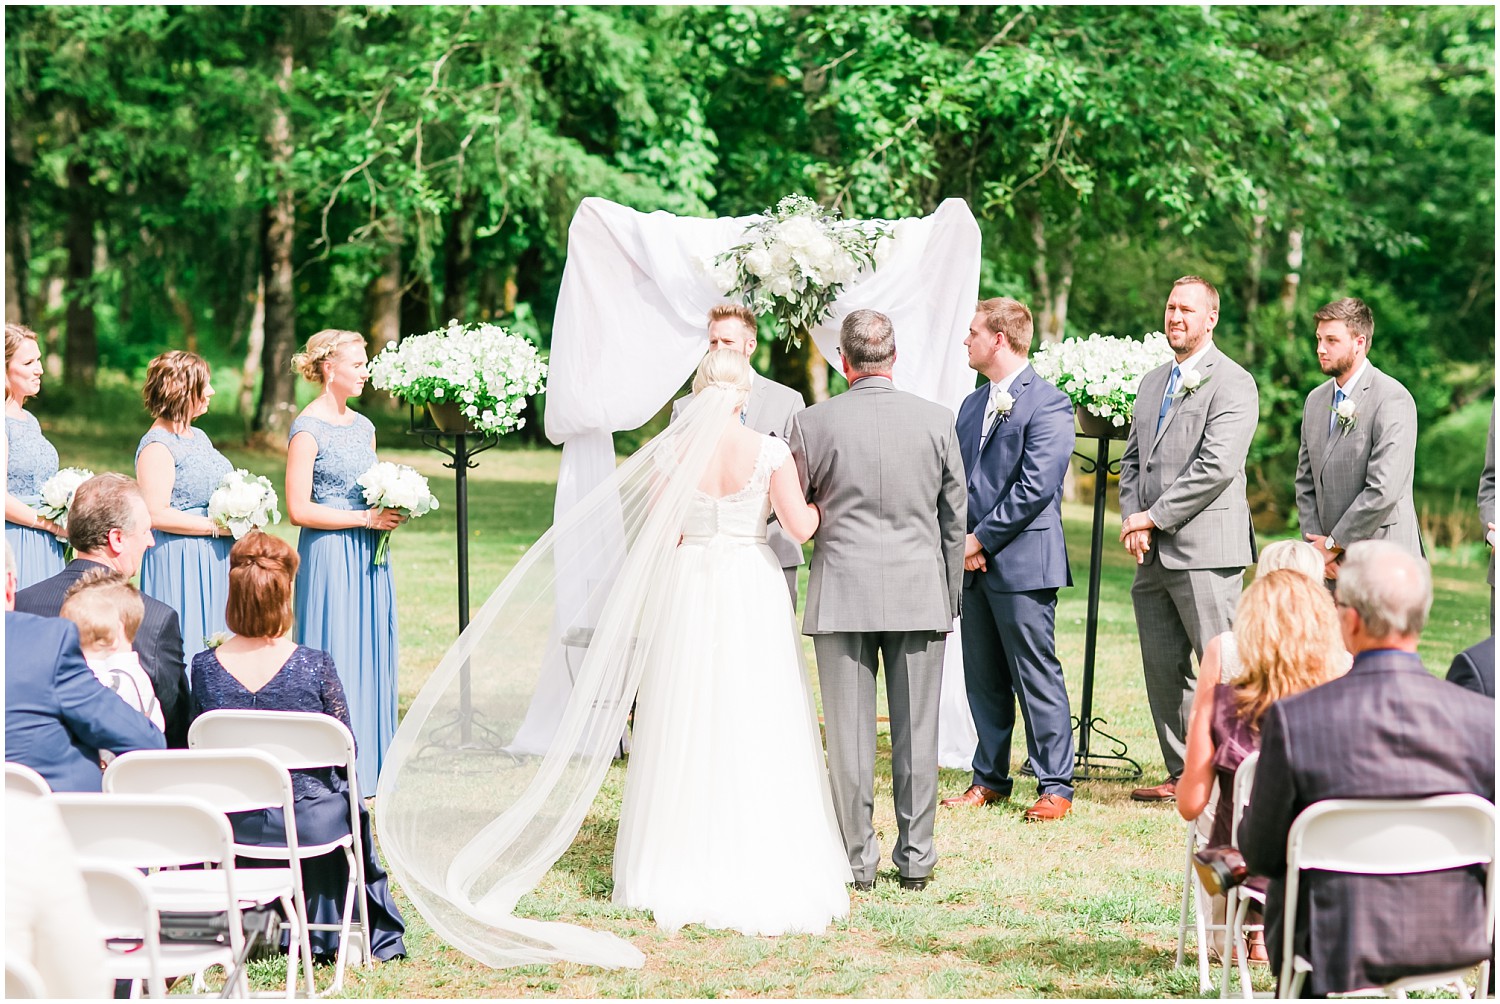 Dusty Blue Backyard Wedding | Daniel & Mackenzie